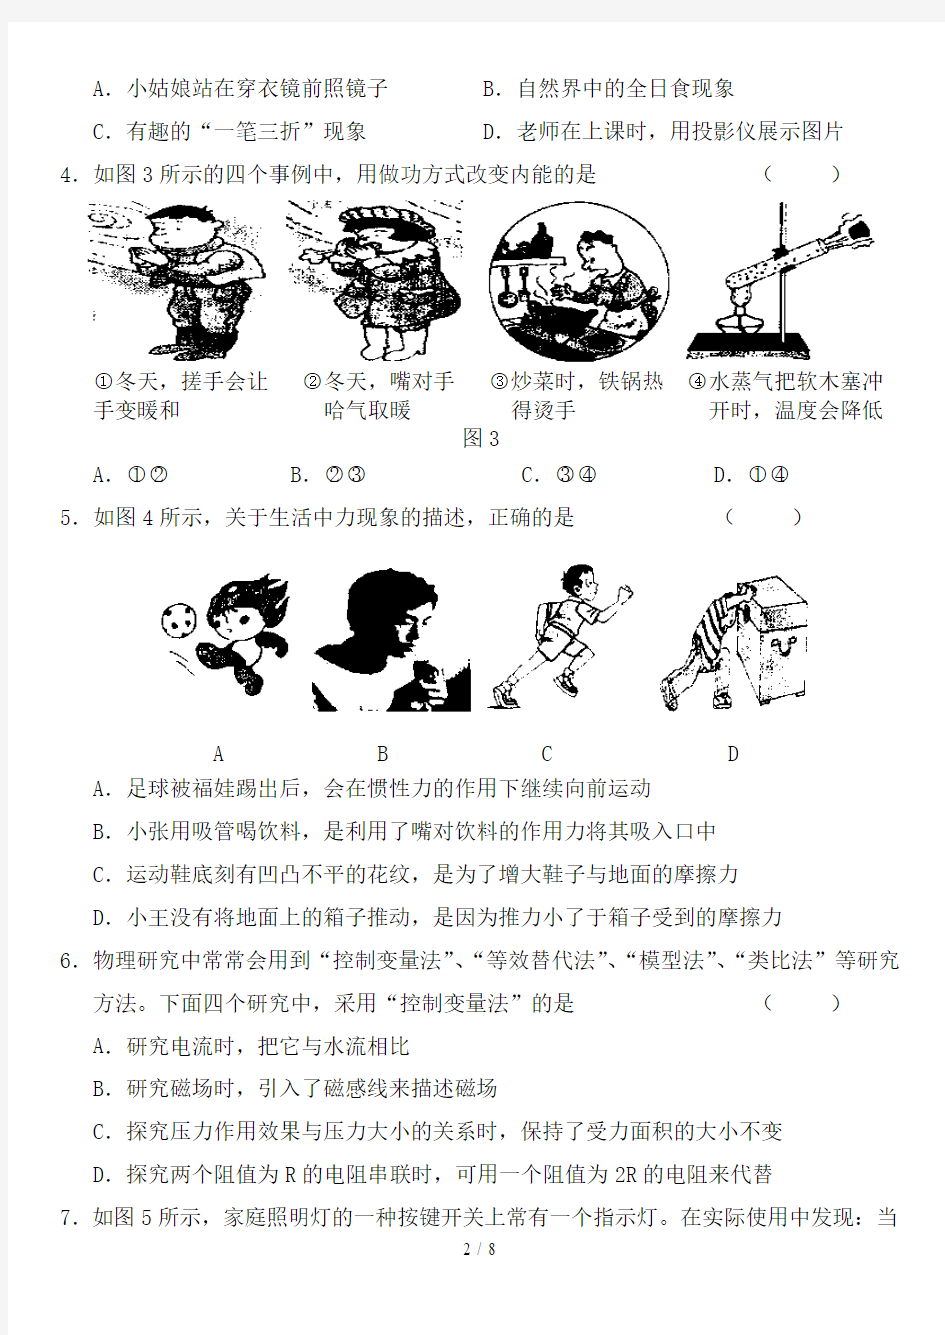 重庆中考物理试卷附详细答案及评分标准